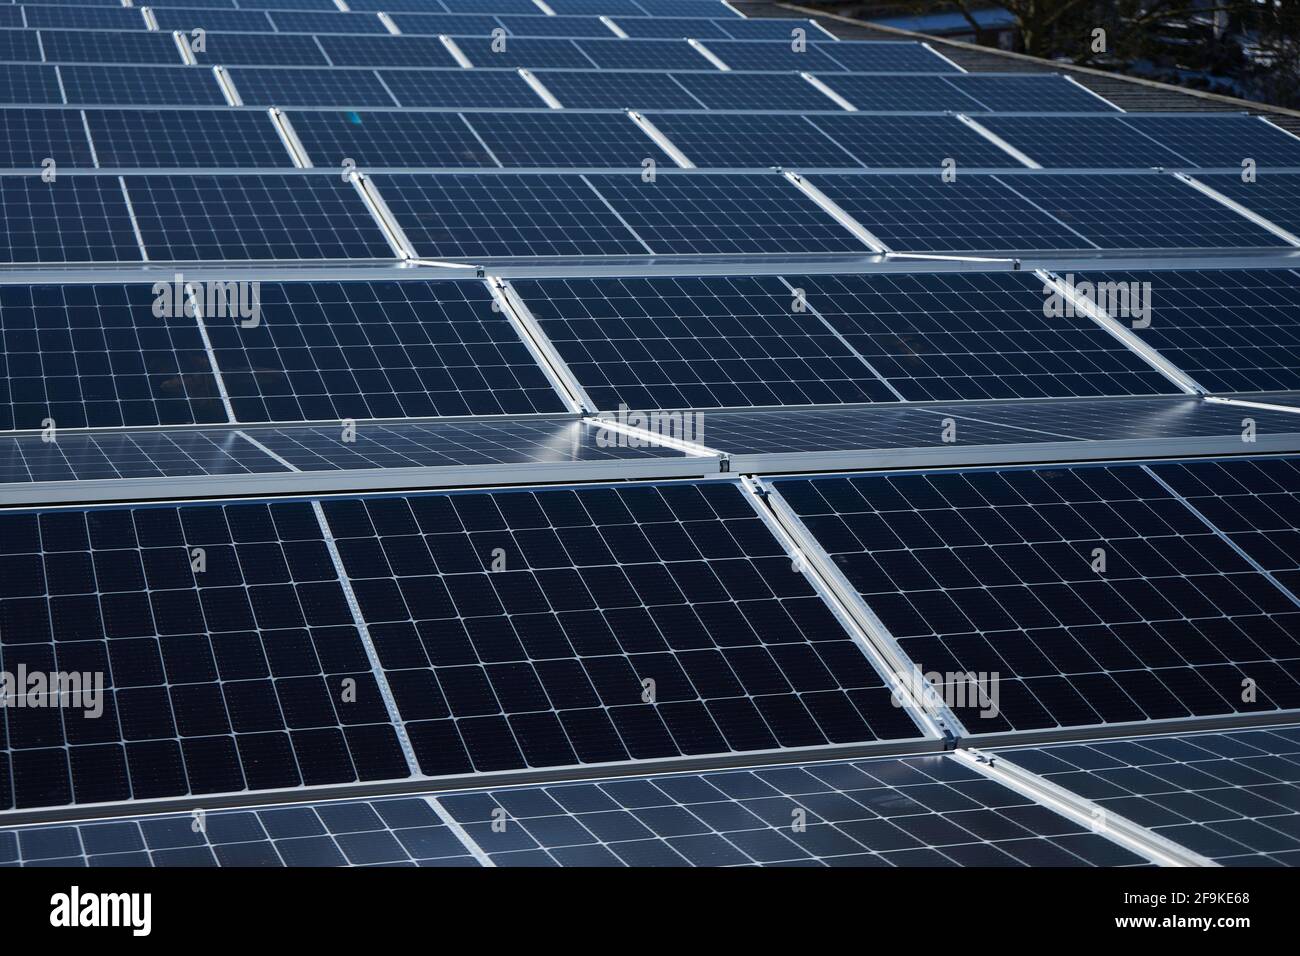 Photovoltaikanlage, Aufdachmontage, Solarmodule auf dem Dach von einem Gewerbebetrieb, geständert, Friedberg, Hessen, Deutschland Foto Stock